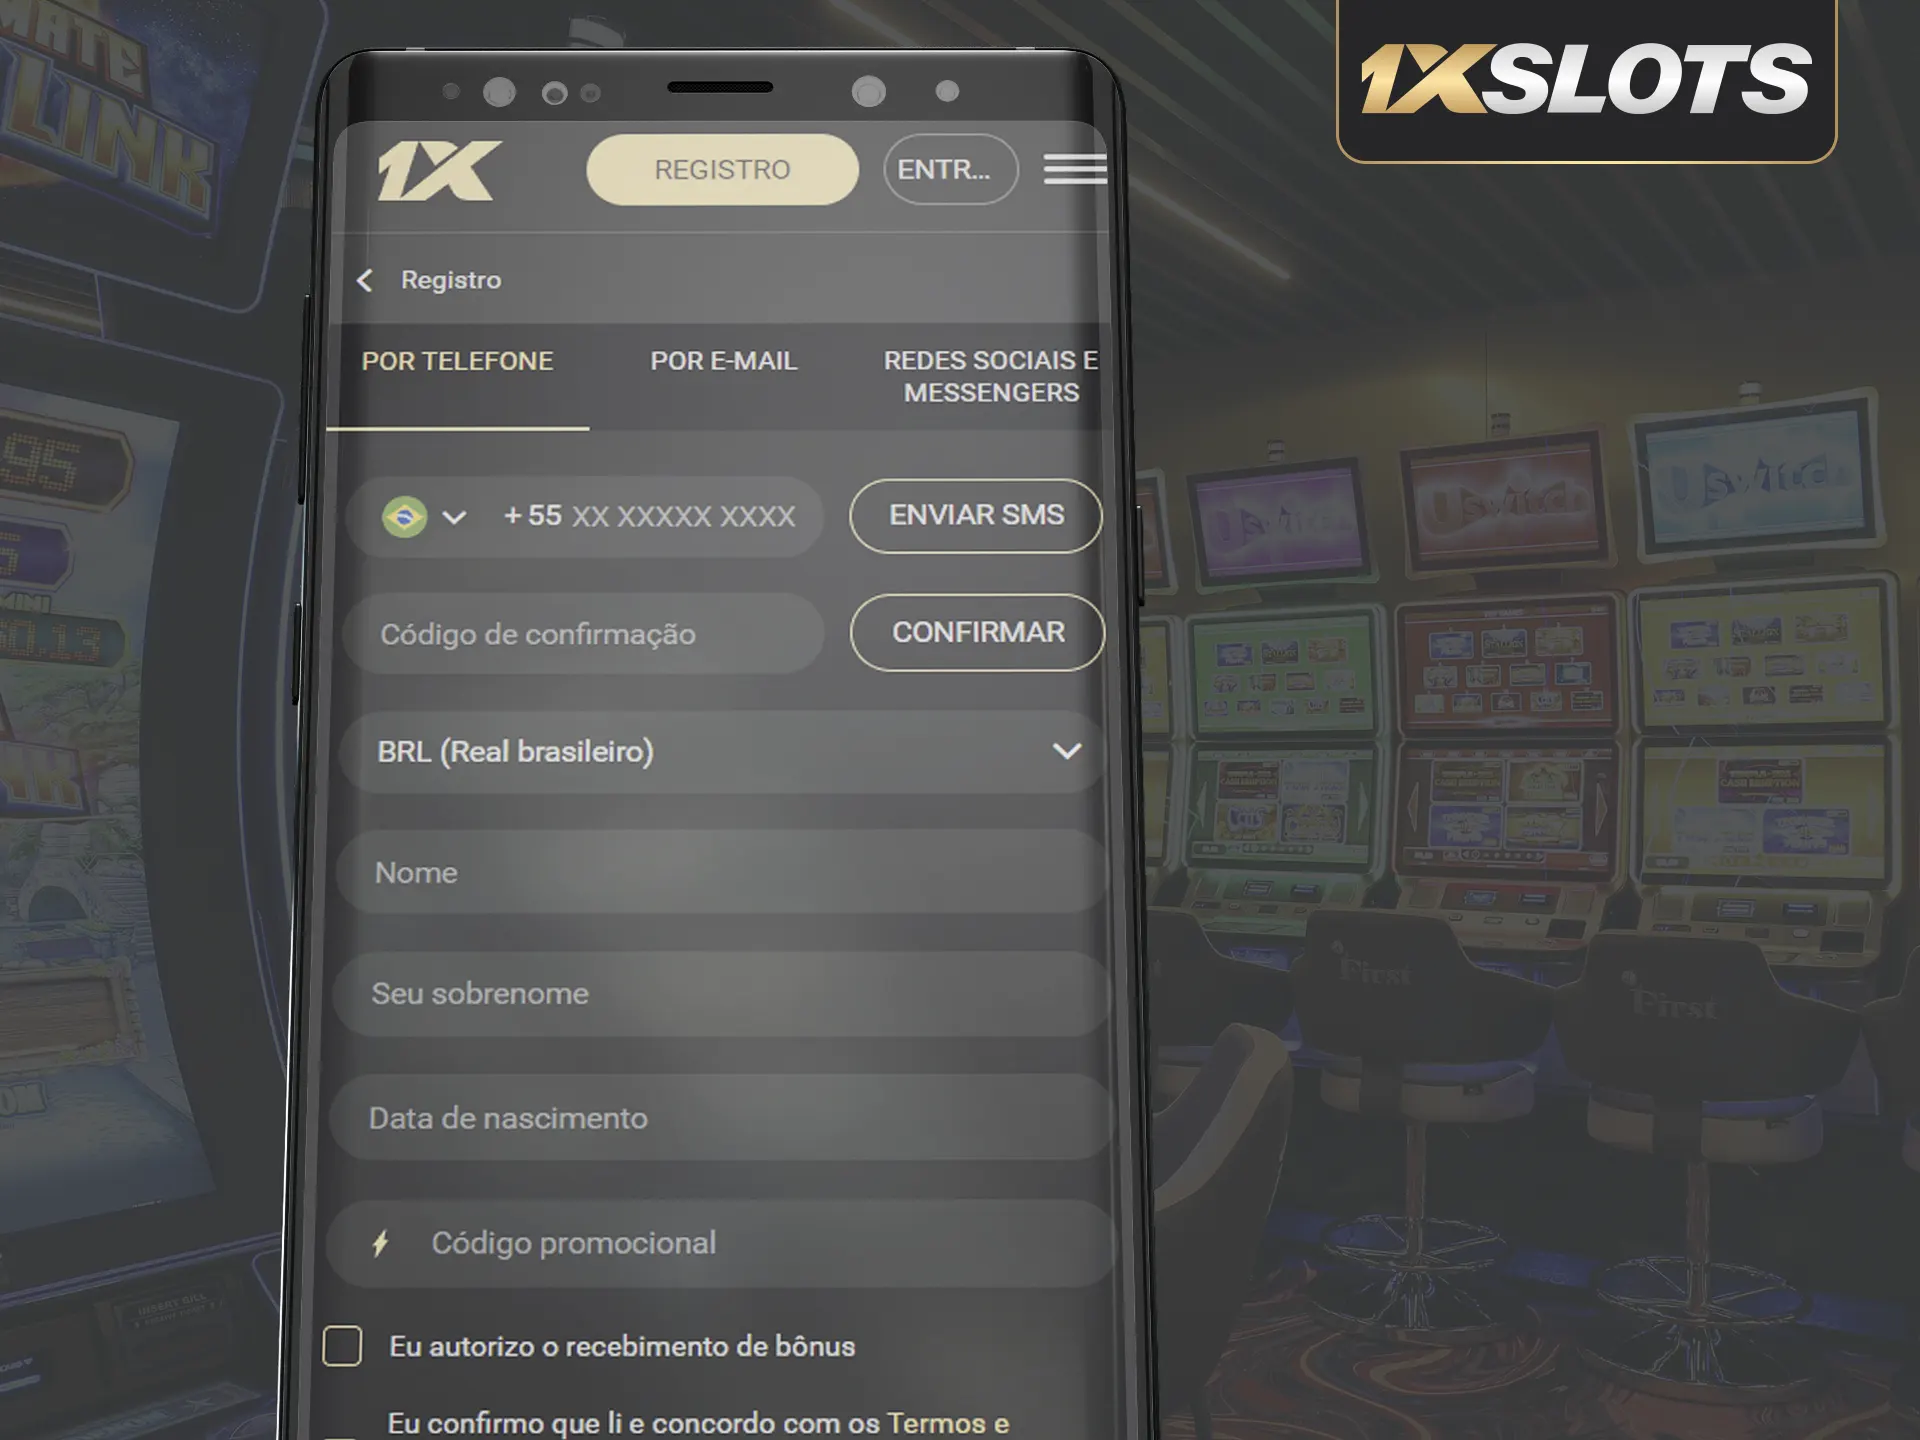 1xSlots App: Download, escolha cadastro, insira dados, concorde com Termos e Condições.